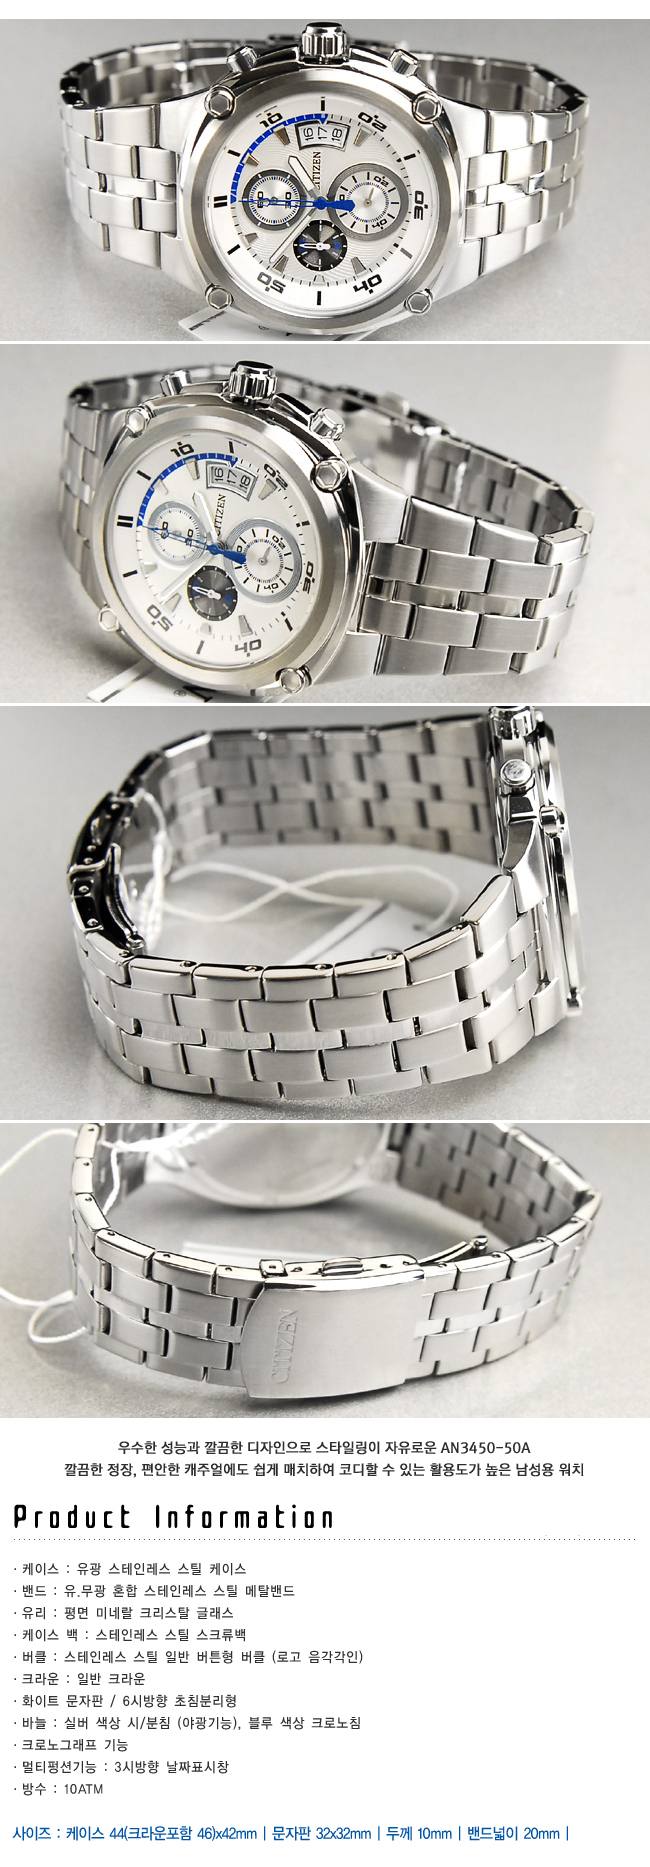 HCM - Một số mẫu đồng hồ chính hãng cực đẹp, giá rẻ- > không thể bỏ qua - 1